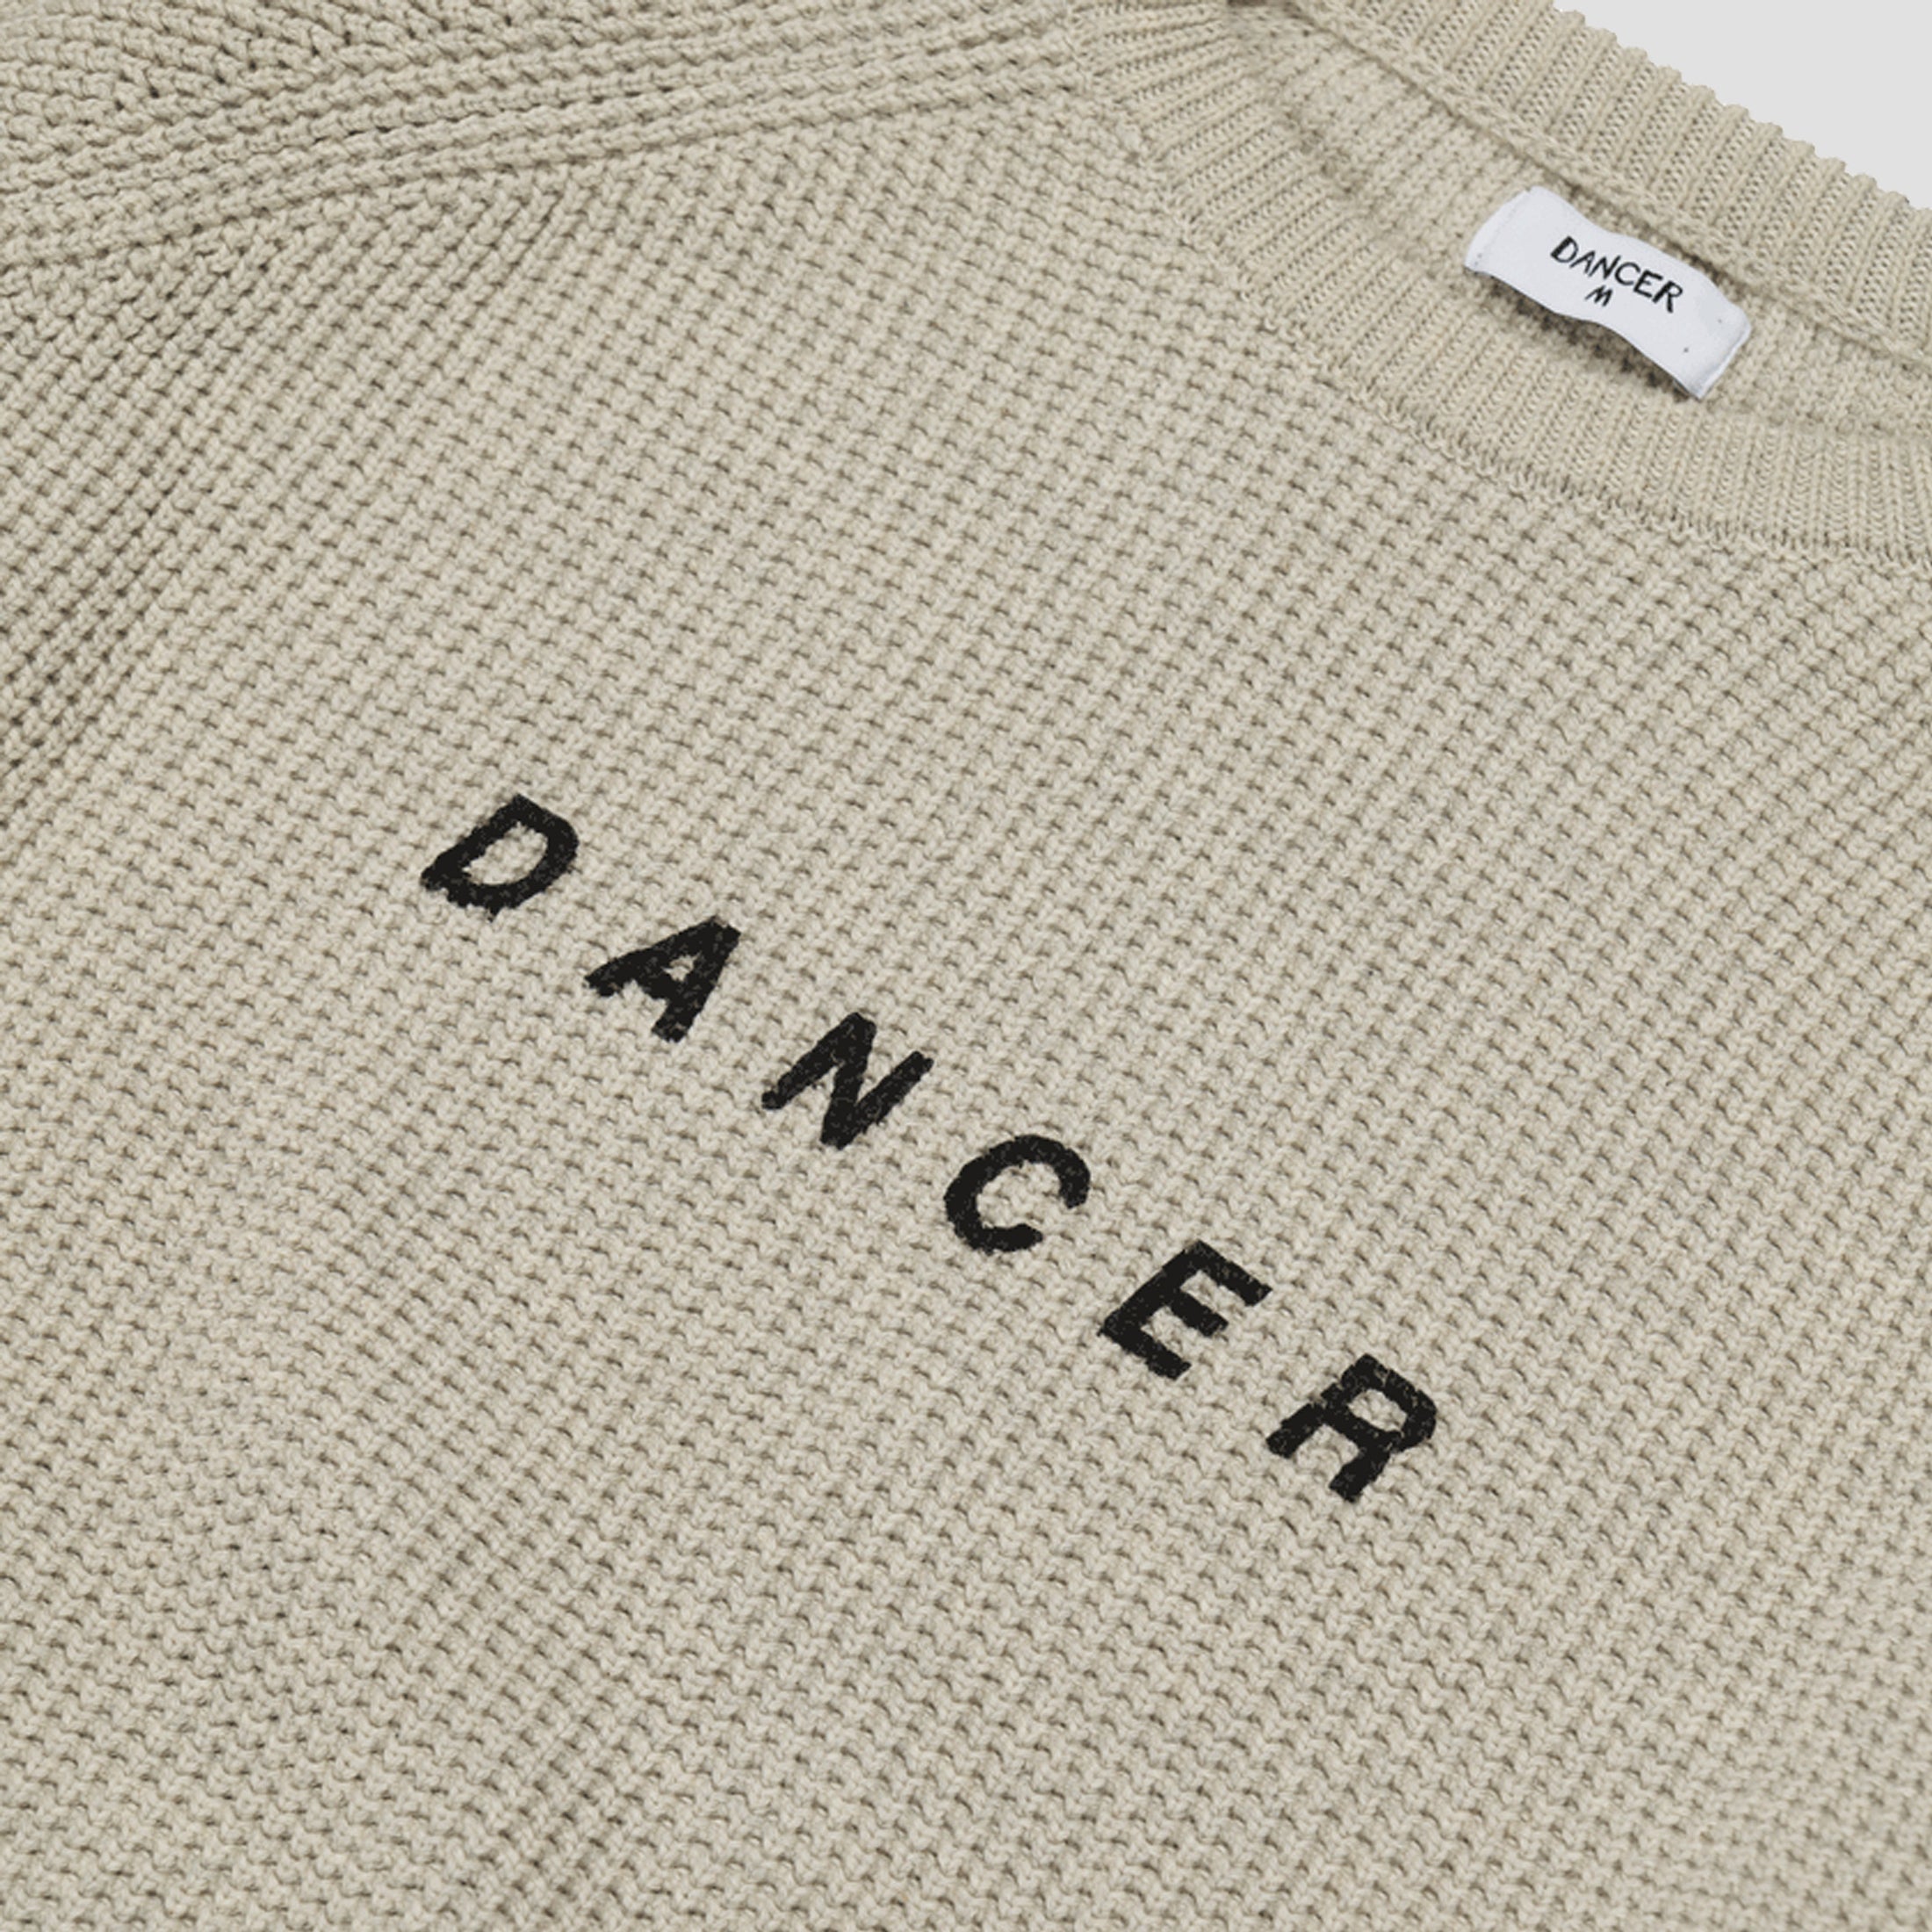 Dancer Logo Cotton Knit Cream